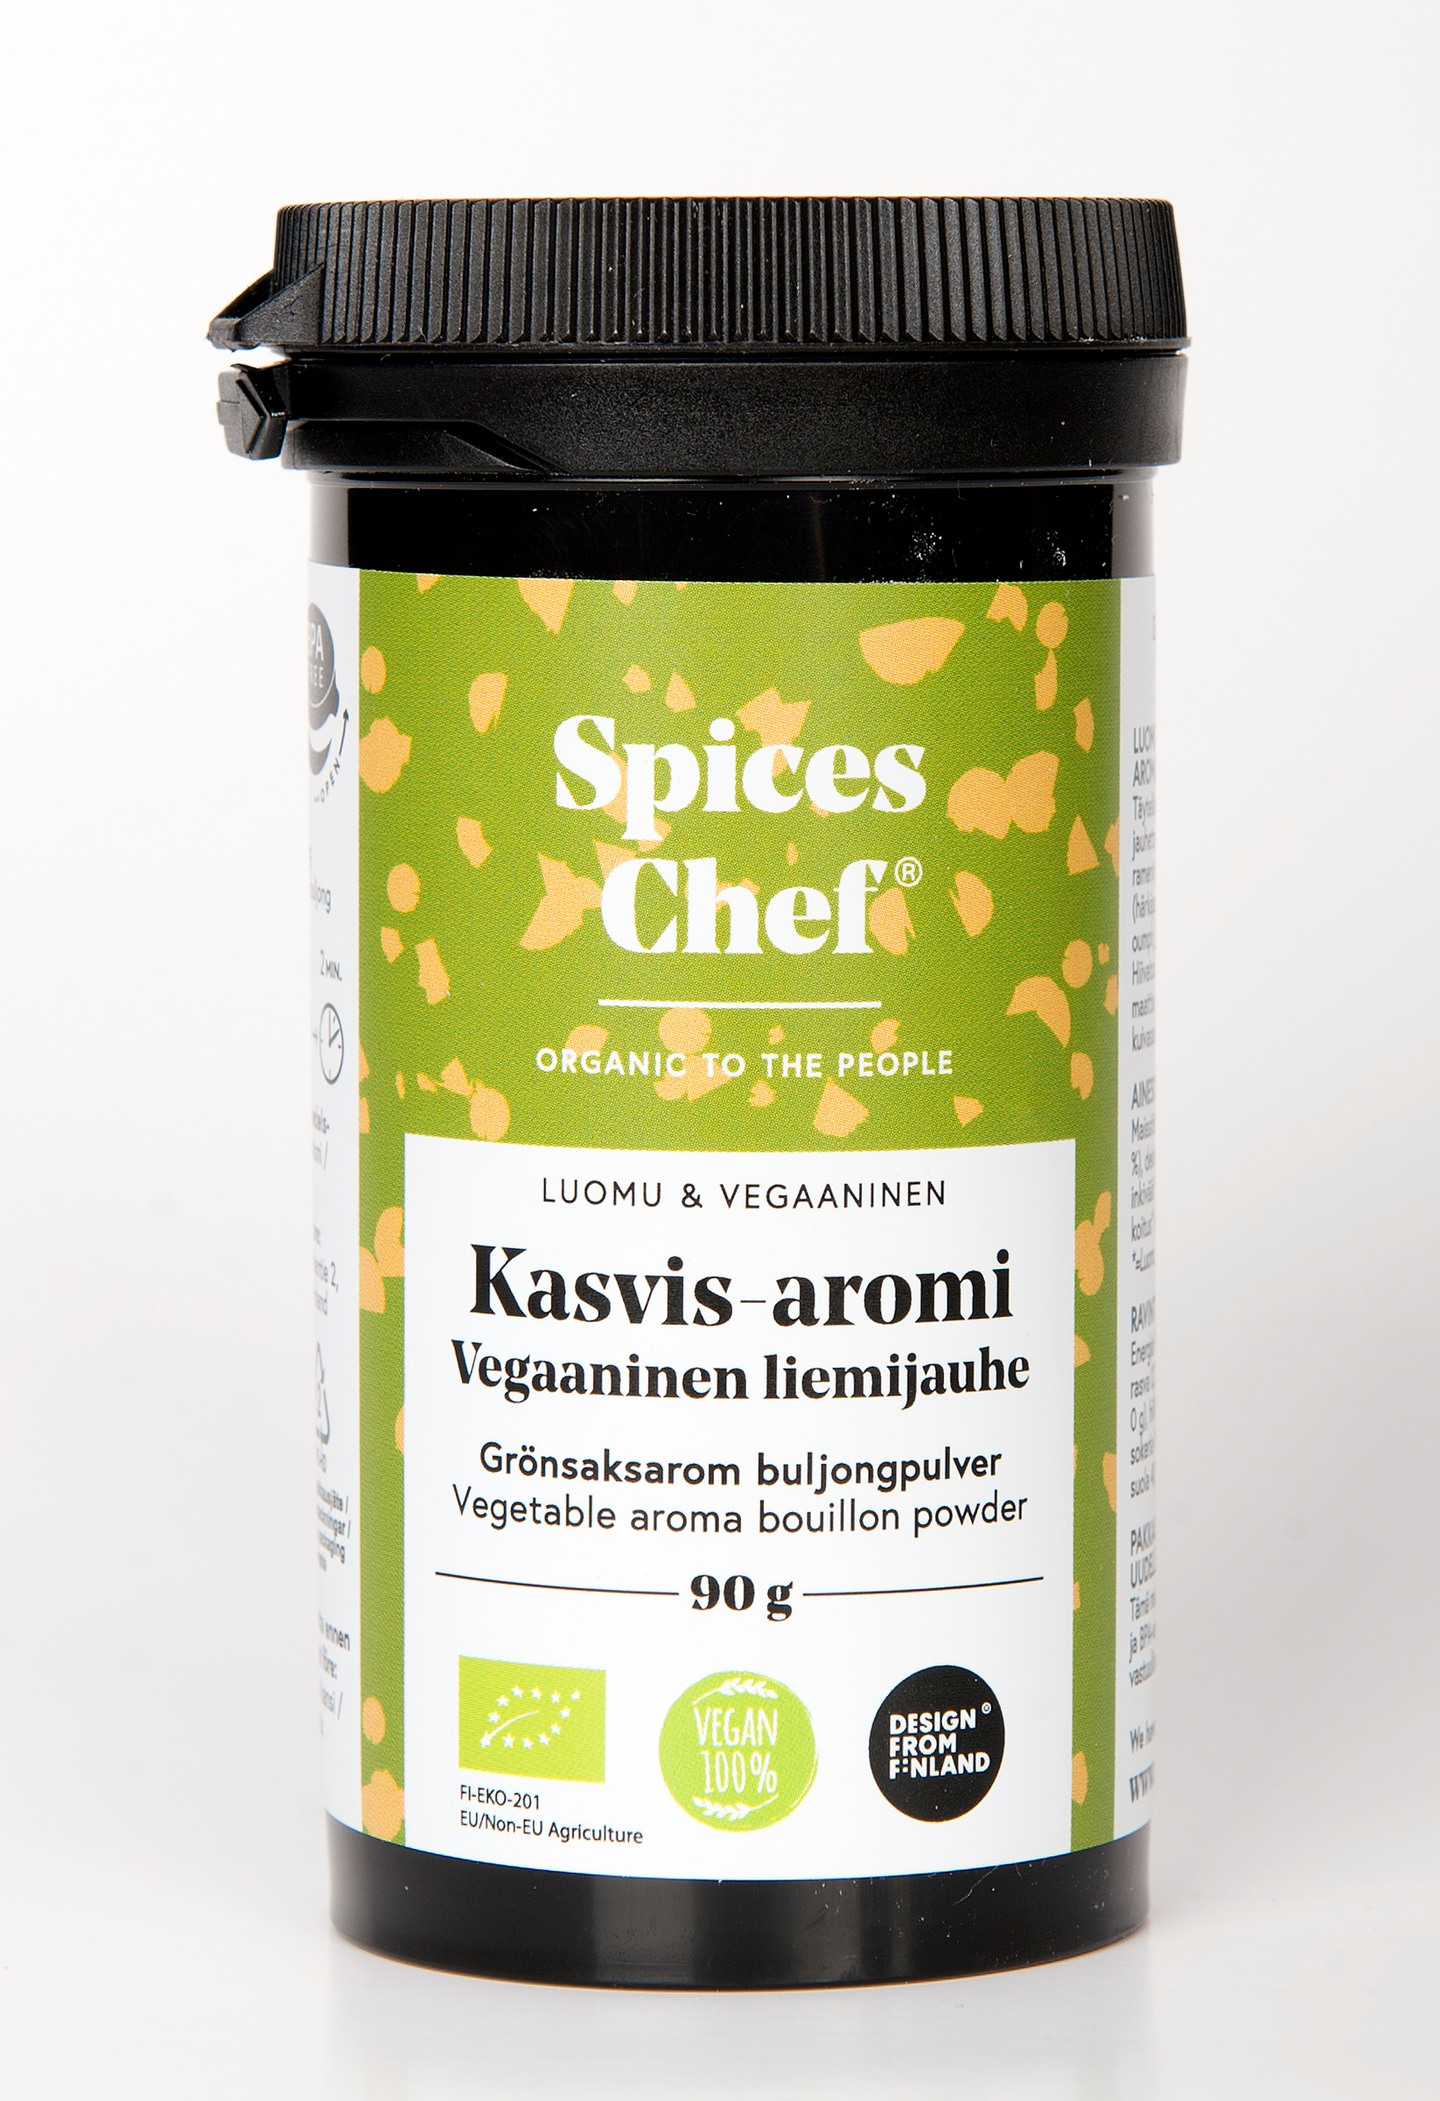 Spices Chef luomu Kasvis-aromi vegaaninen liemijauhe 90g  BPA-vapaassa biomuovi maustepurkissa.